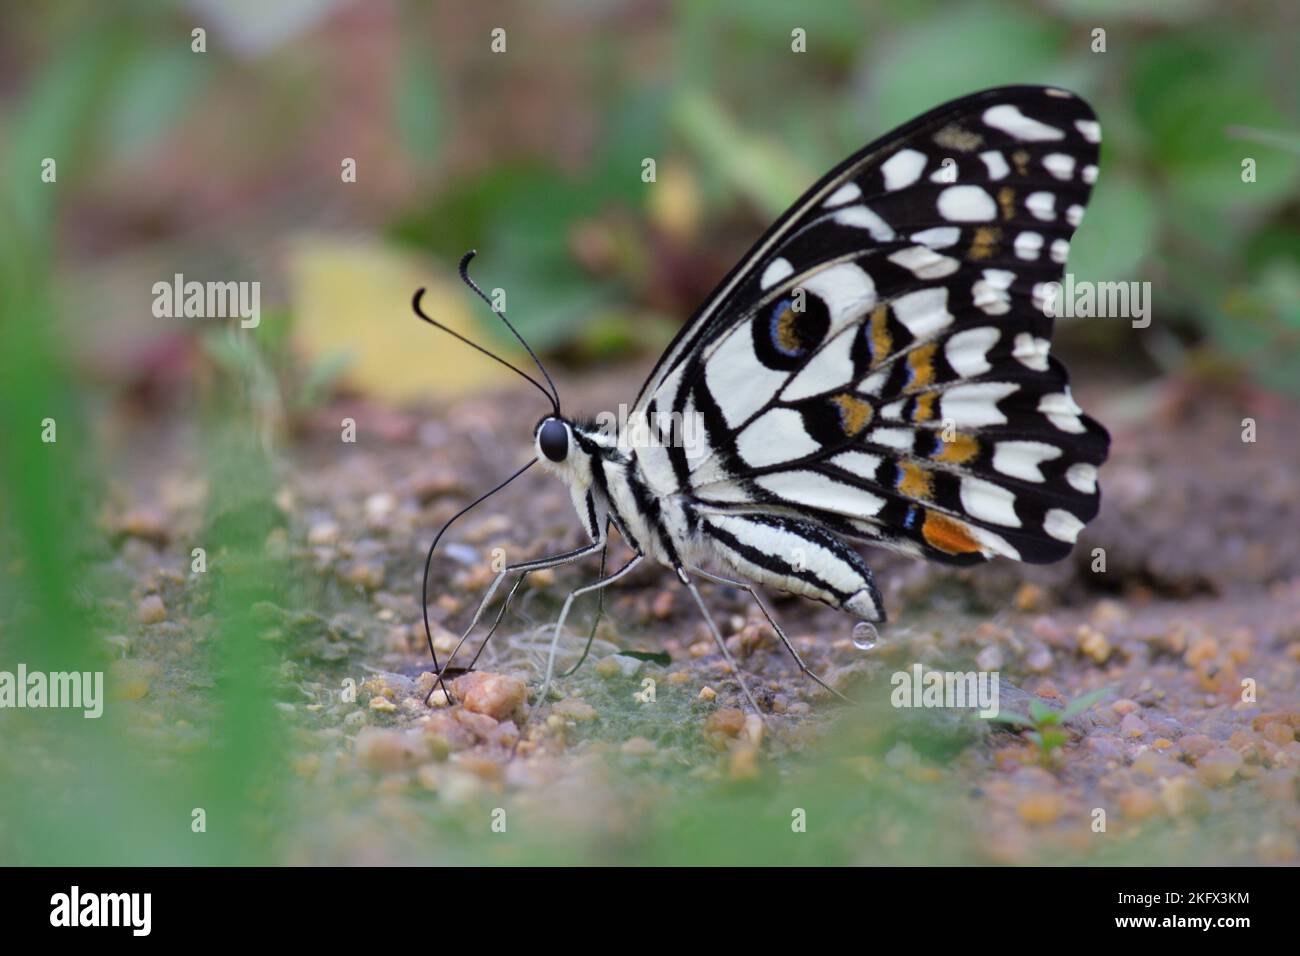 Farfalla Papilio o la farfalla di Lime comune o coda di rondine a scacchi che riposa sulle piante di fiori durante la primavera Foto Stock